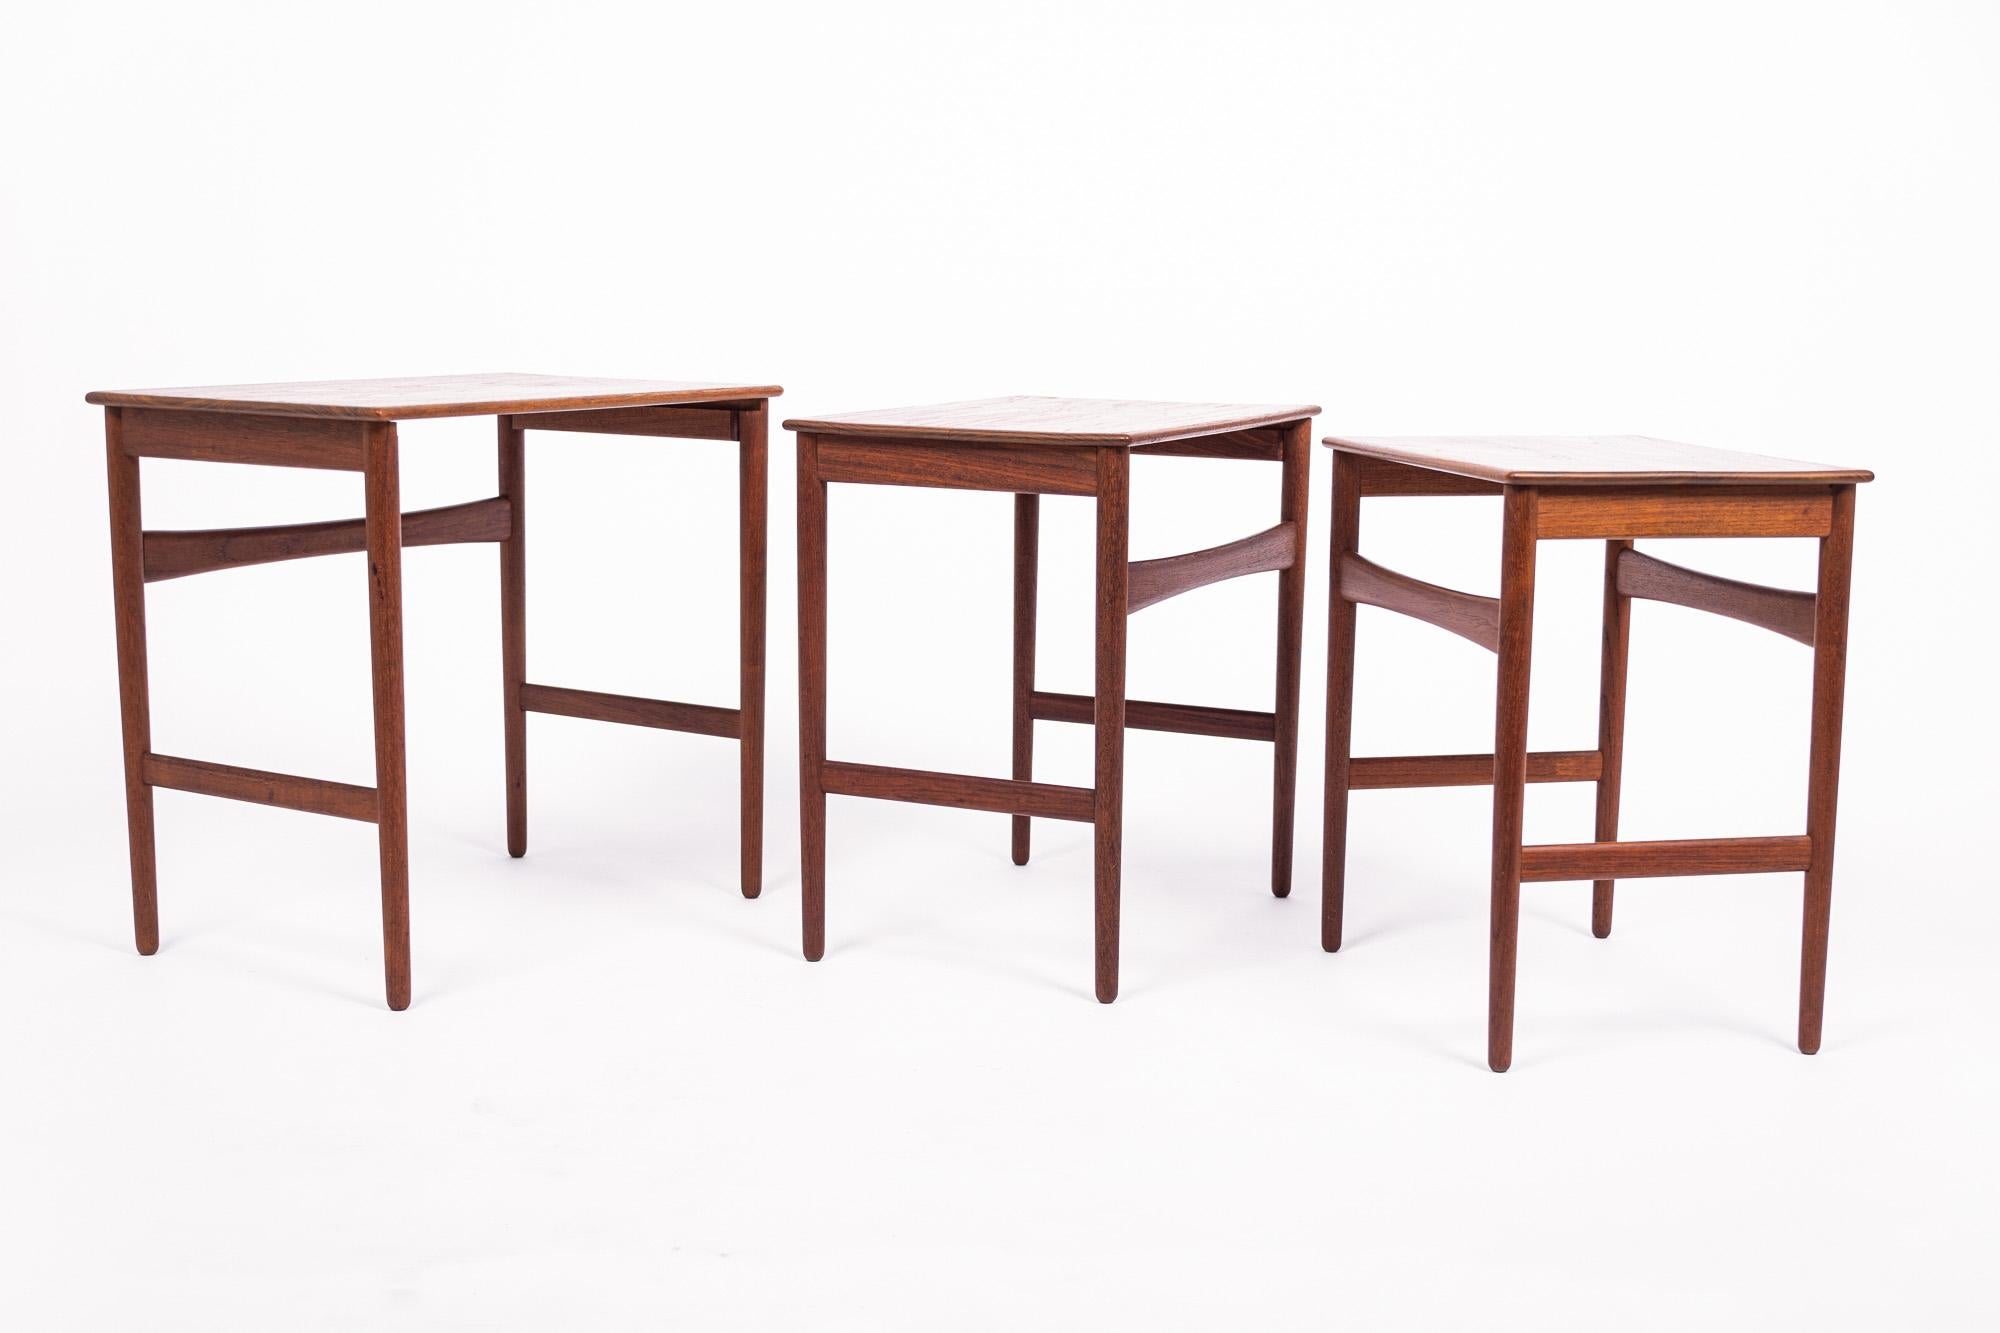 Danish Modern Teak Nesting Side Tables by Hans J. Wegner, 1960s For Sale 2